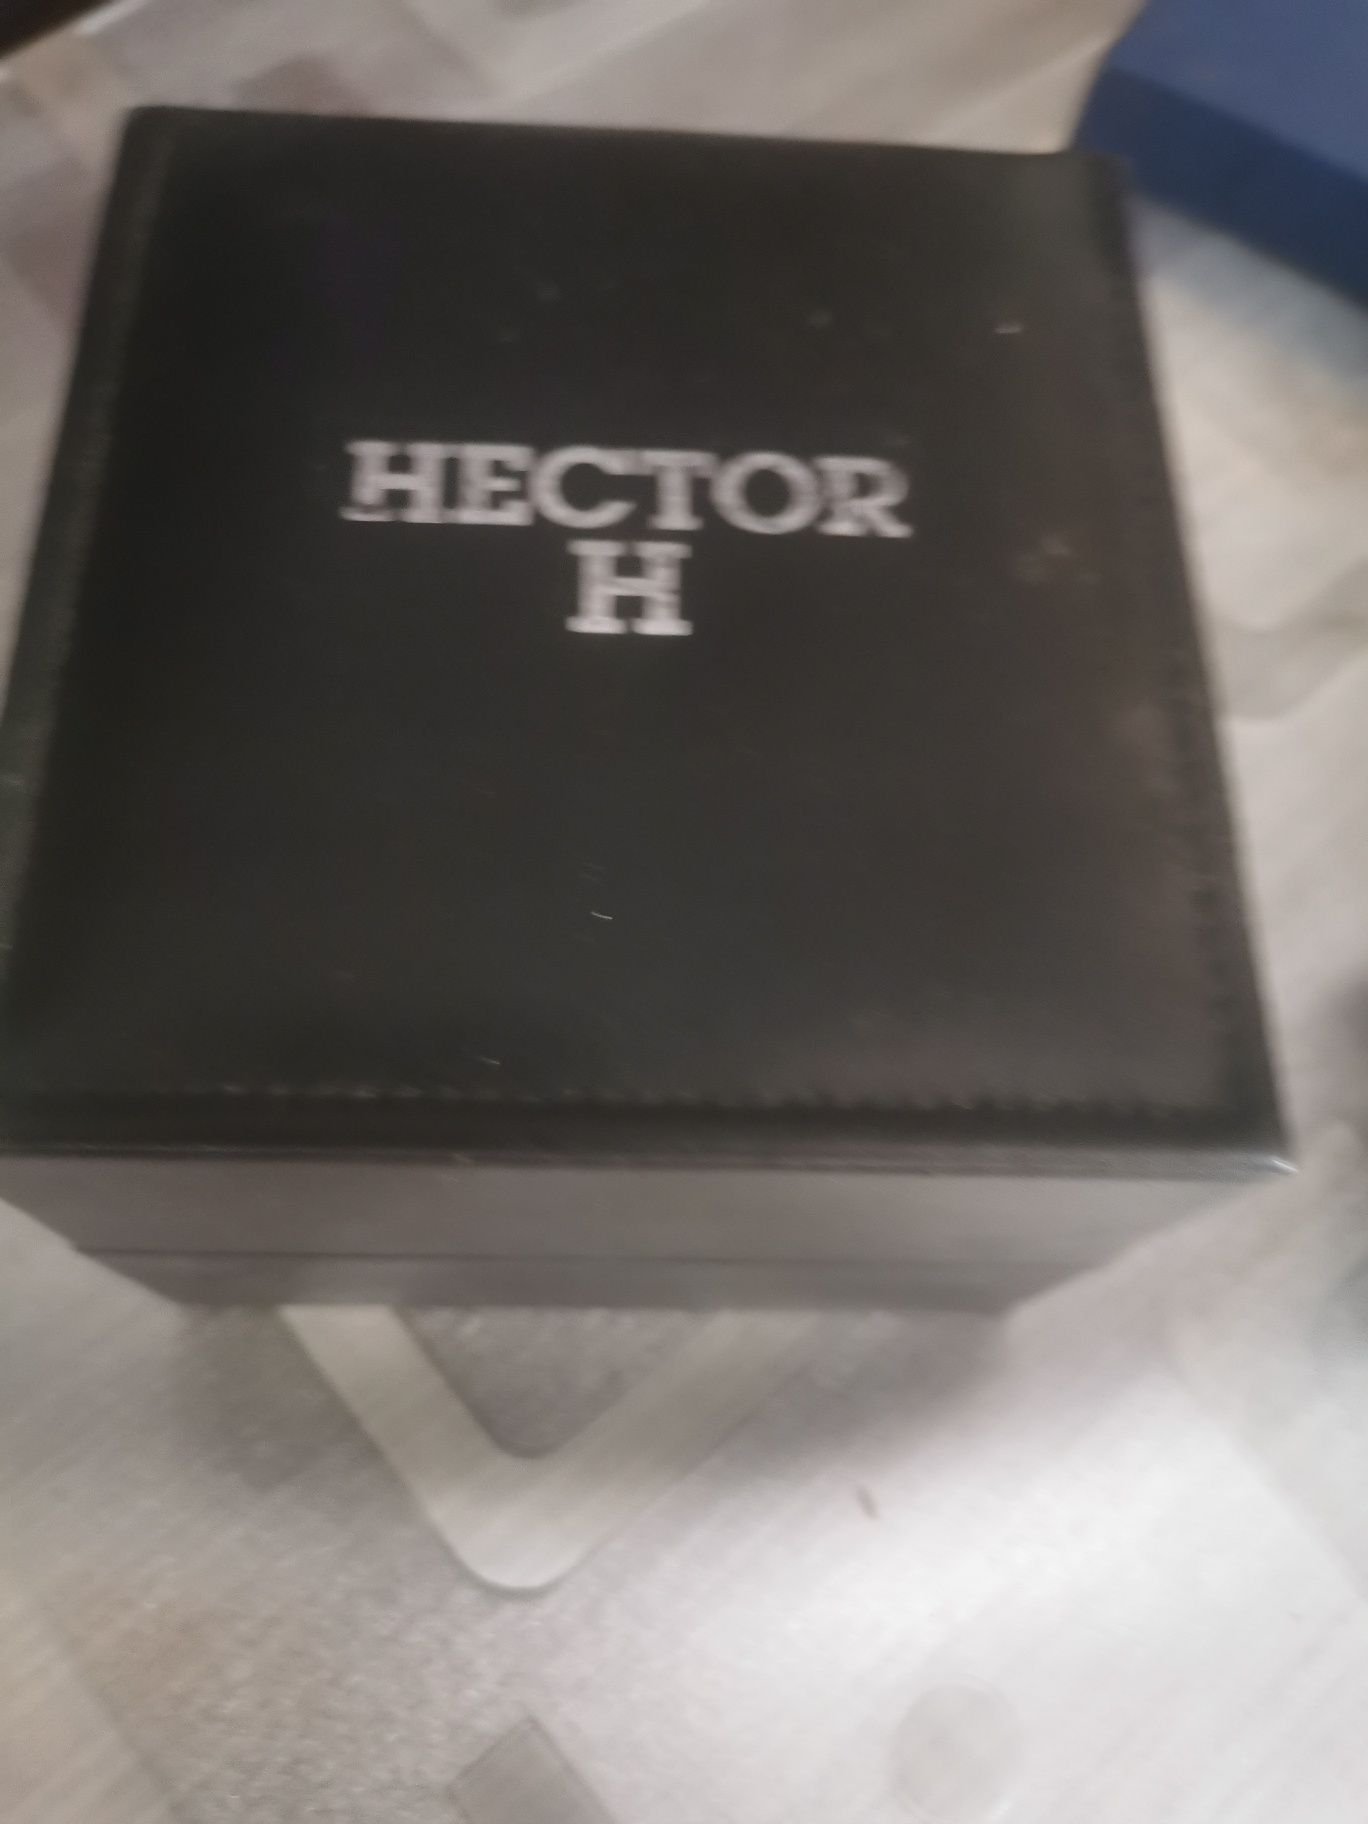 Relógio Hector H